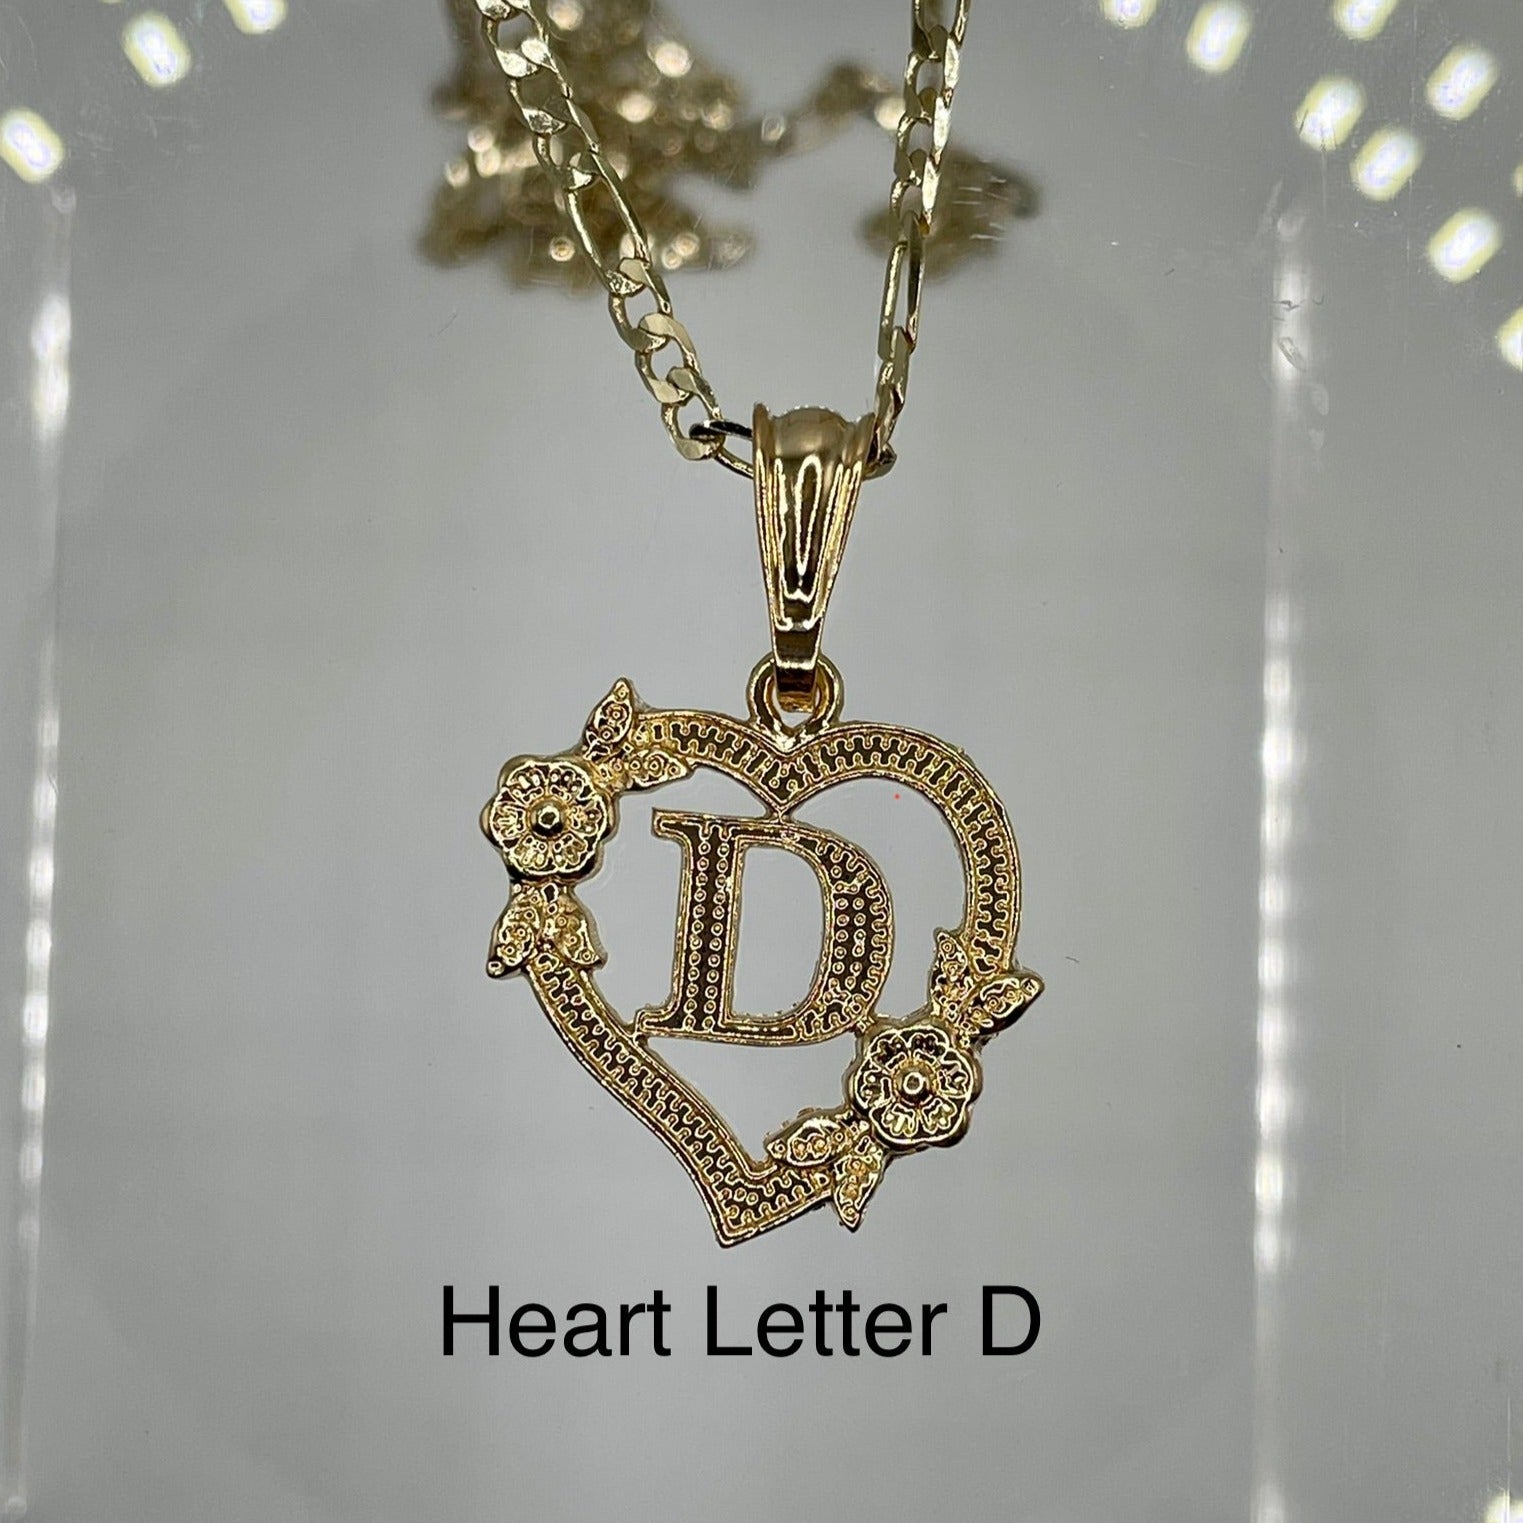 Heart letter D pendant. Gold heart pendant. Letter pendants.